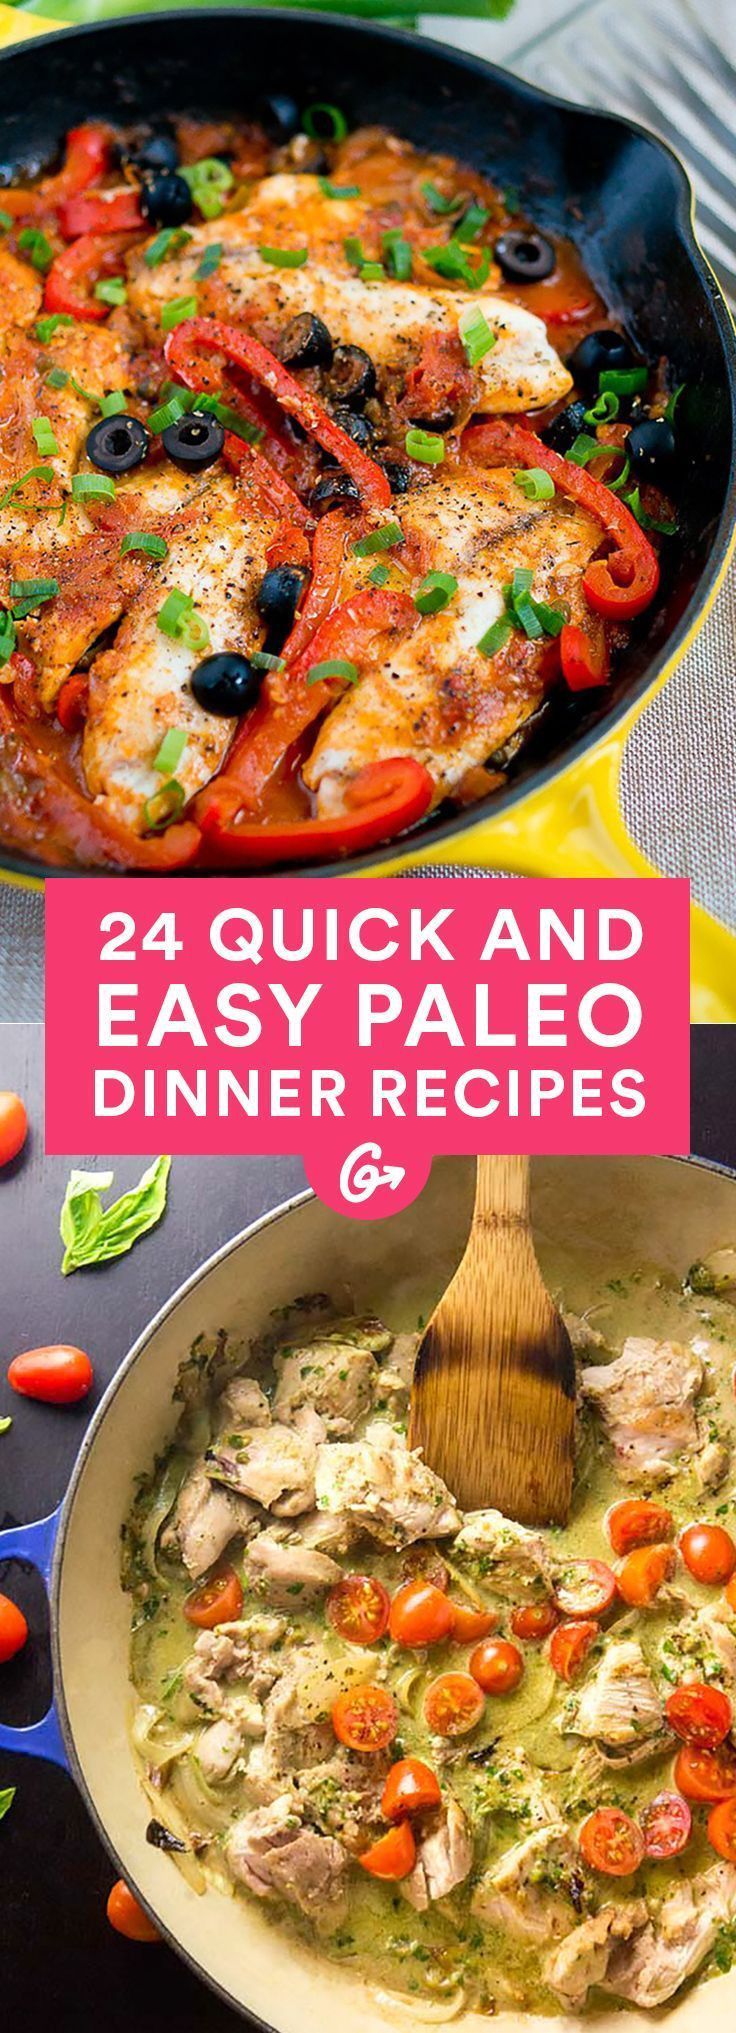 Paleo Diet Dinner Ideas
 19 Easy Paleo Dinner Recipes